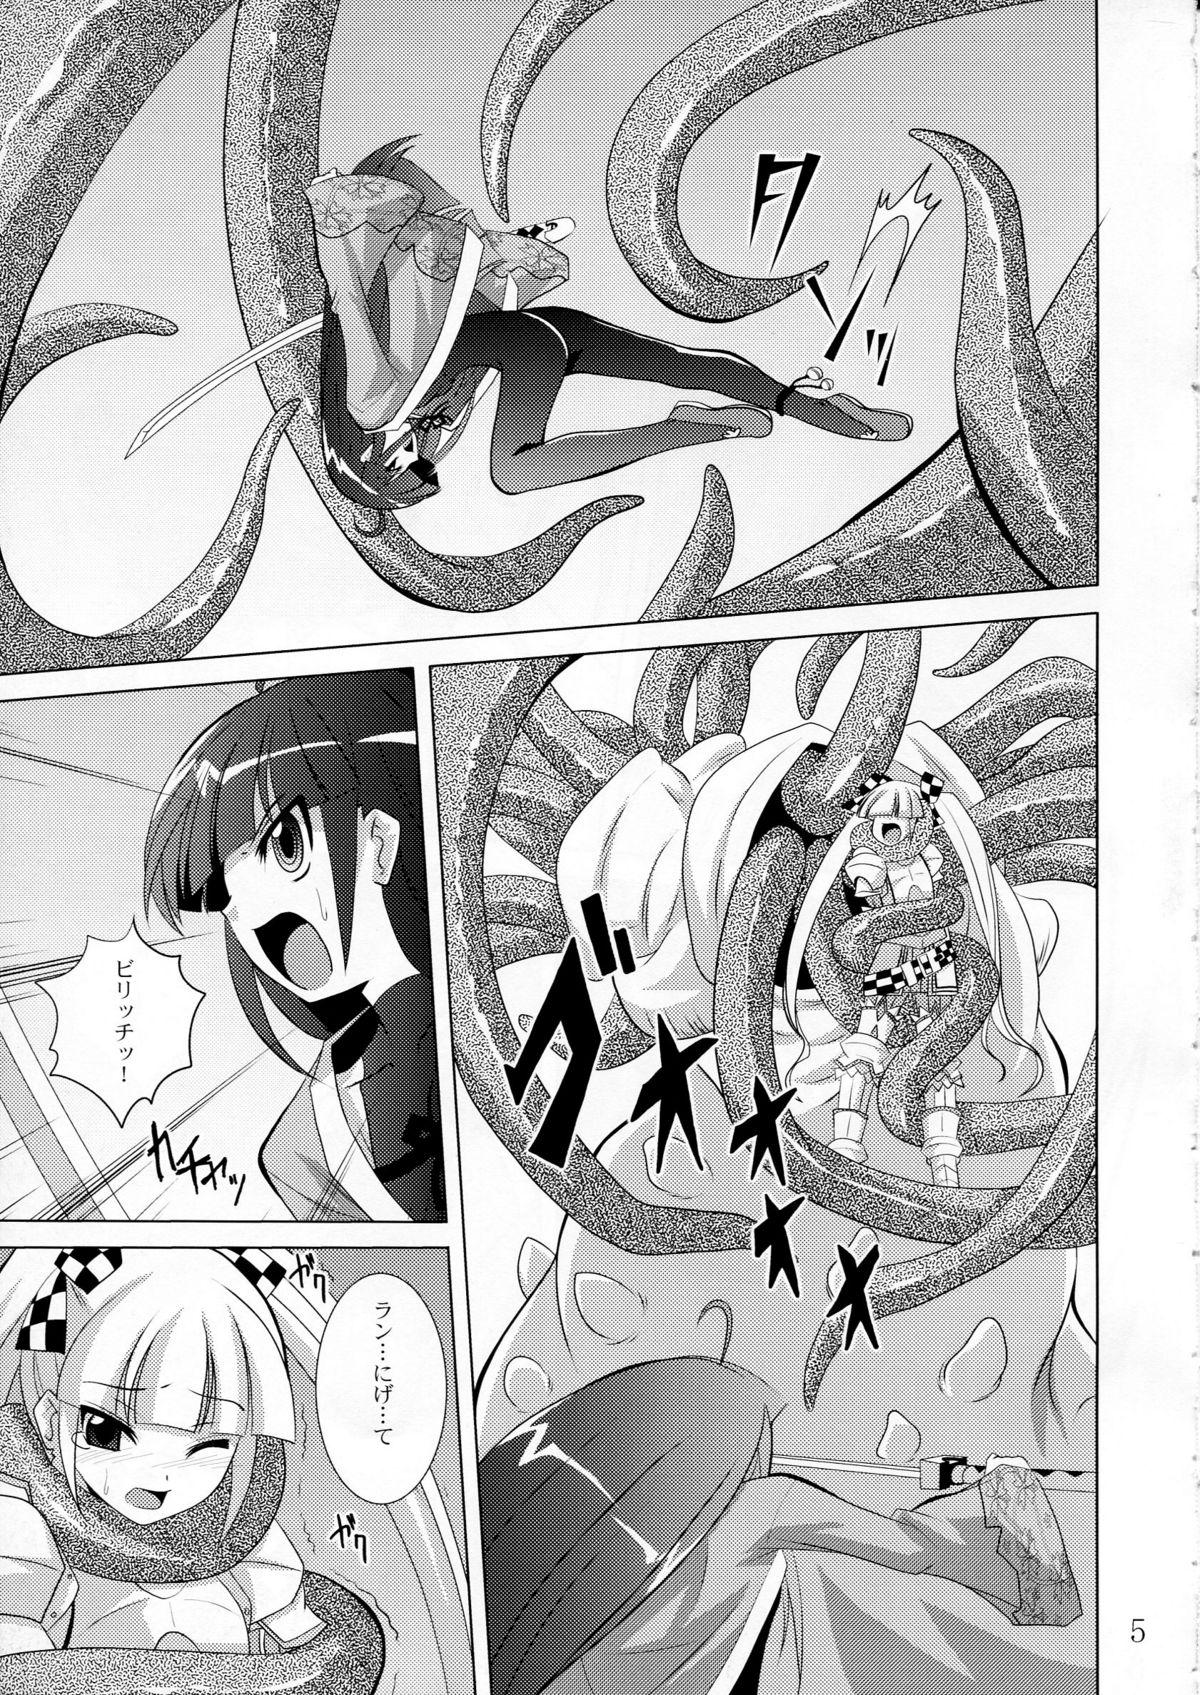 Naija physical - 7th dragon 4some - Page 4